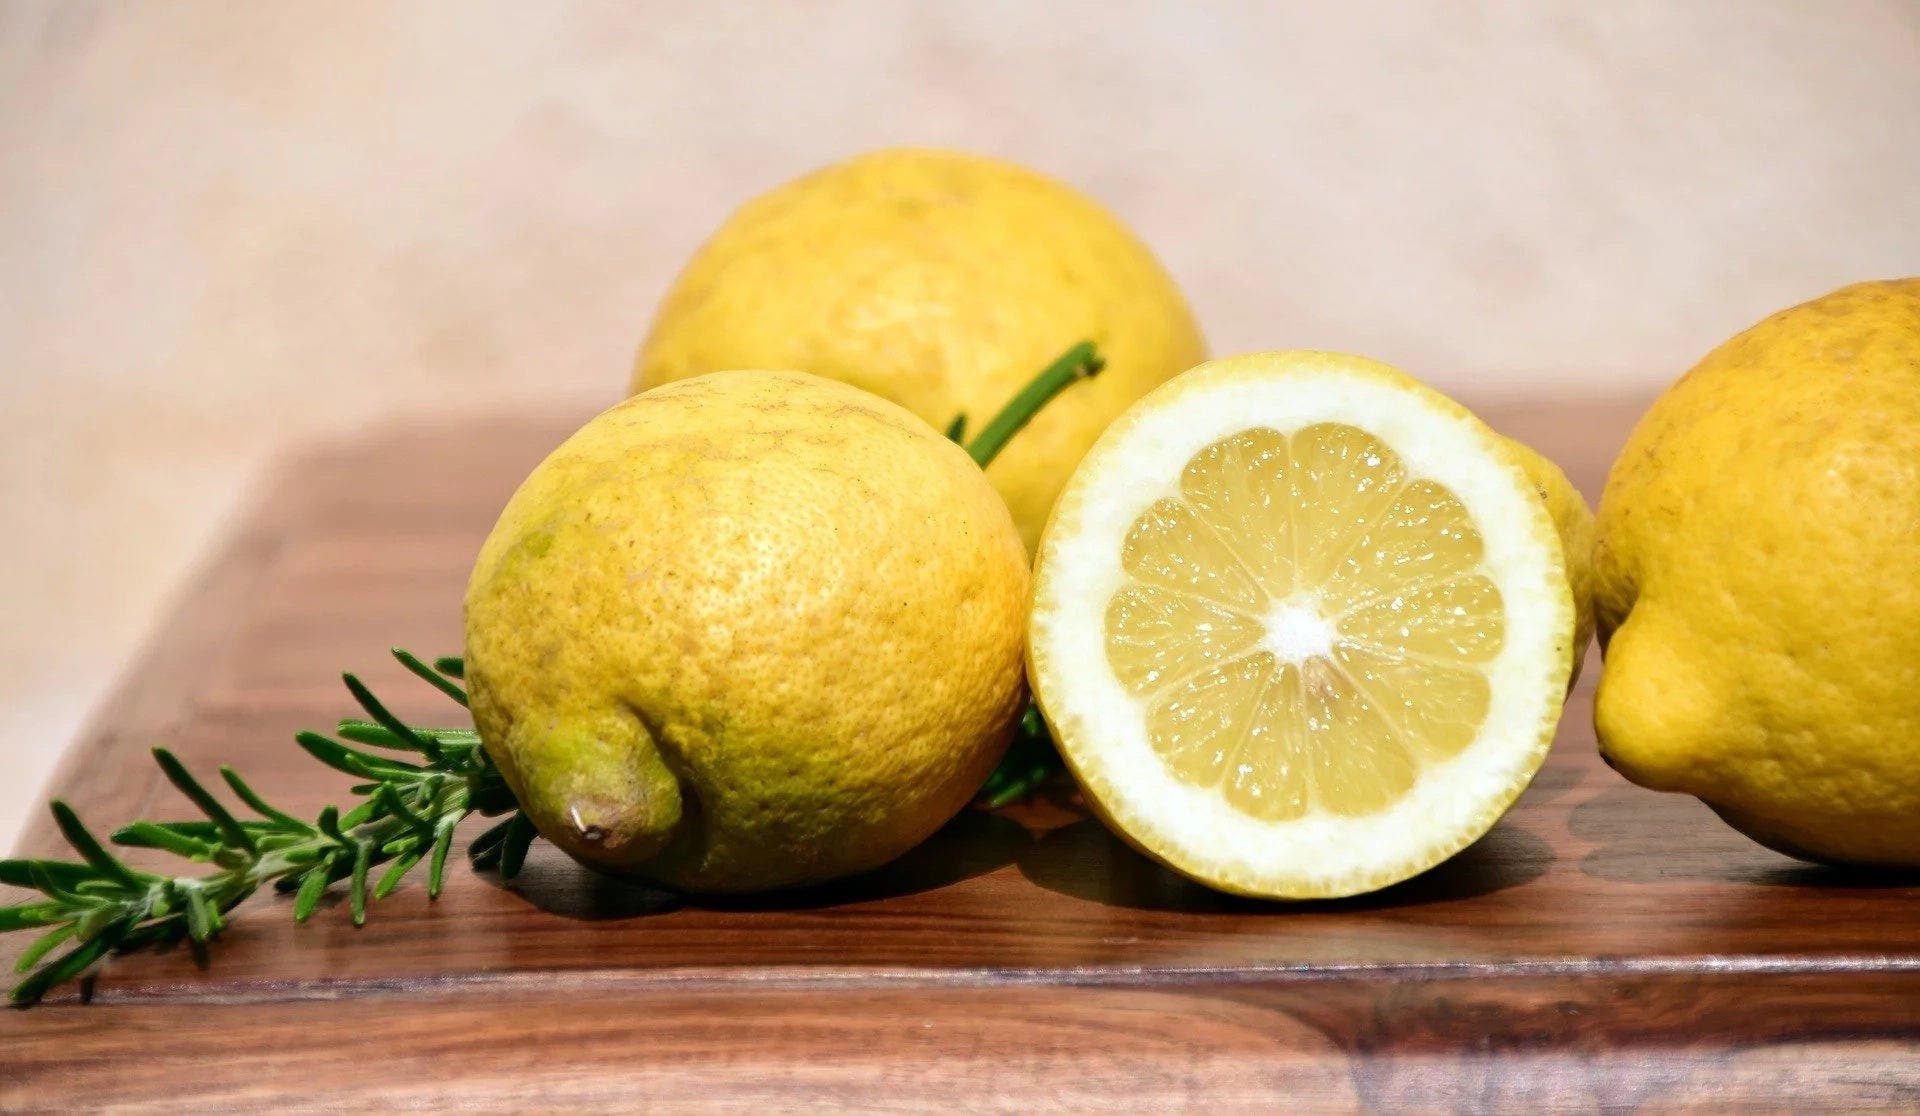 La célèbre recette de vinaigrette au citron qui fait perdre du poids et dégonfle ventre